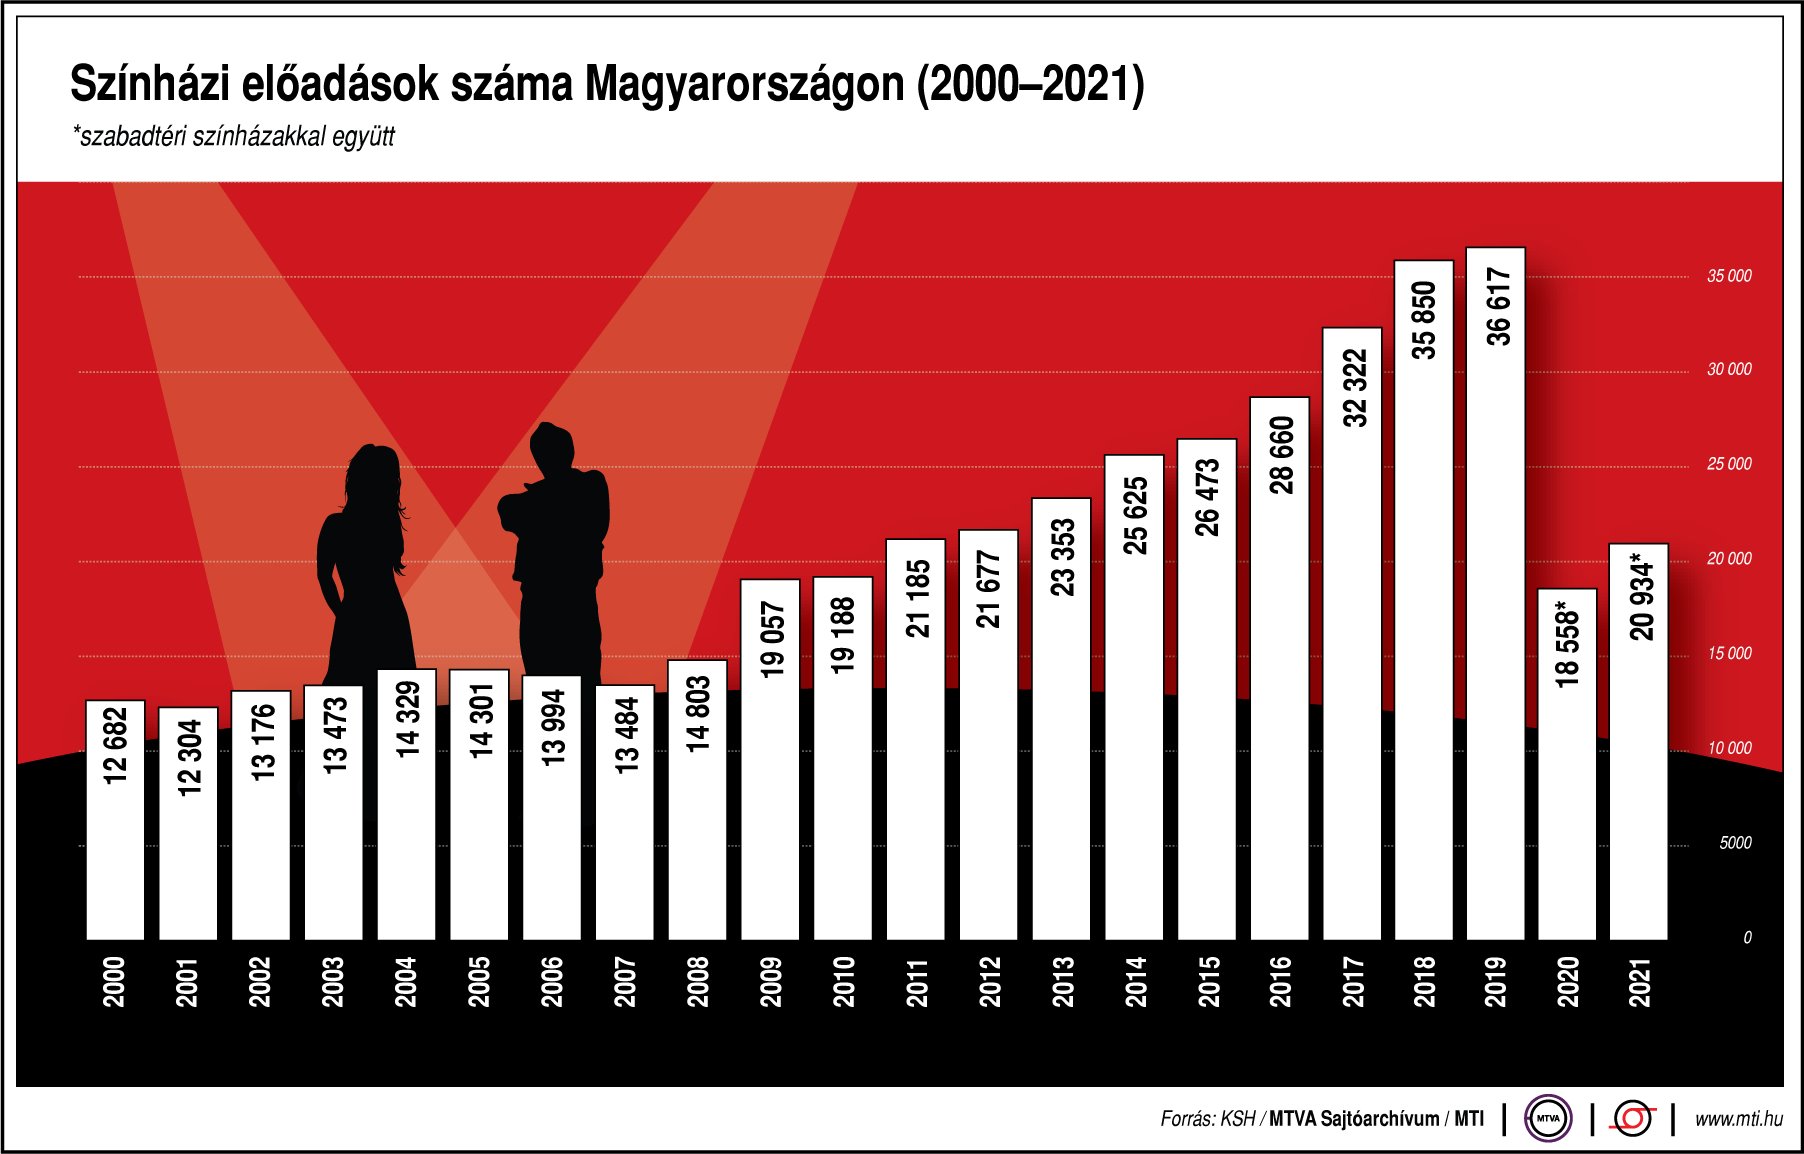 Színházlátogatók száma Magyarországon (2000-2021)